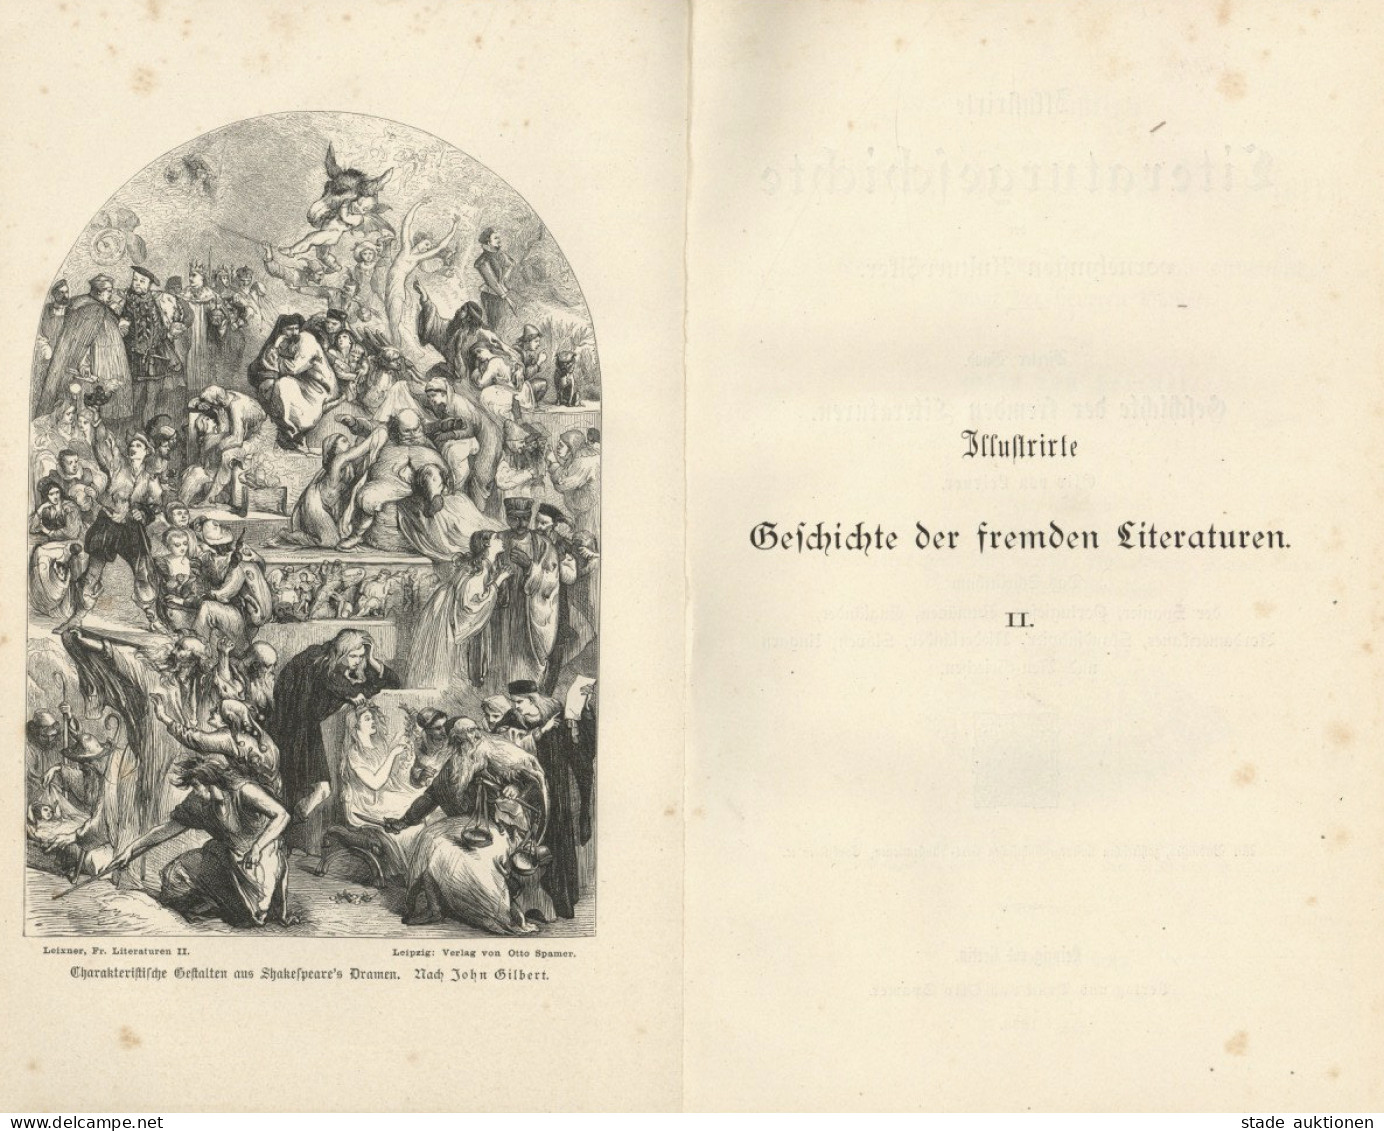 Buch Lot Mit 2 Büchern Illustrierte Geschichte Der Fremden Literaturen Band I Ud II Von Leixner, Otto 1883, Verlag Spame - Alte Bücher